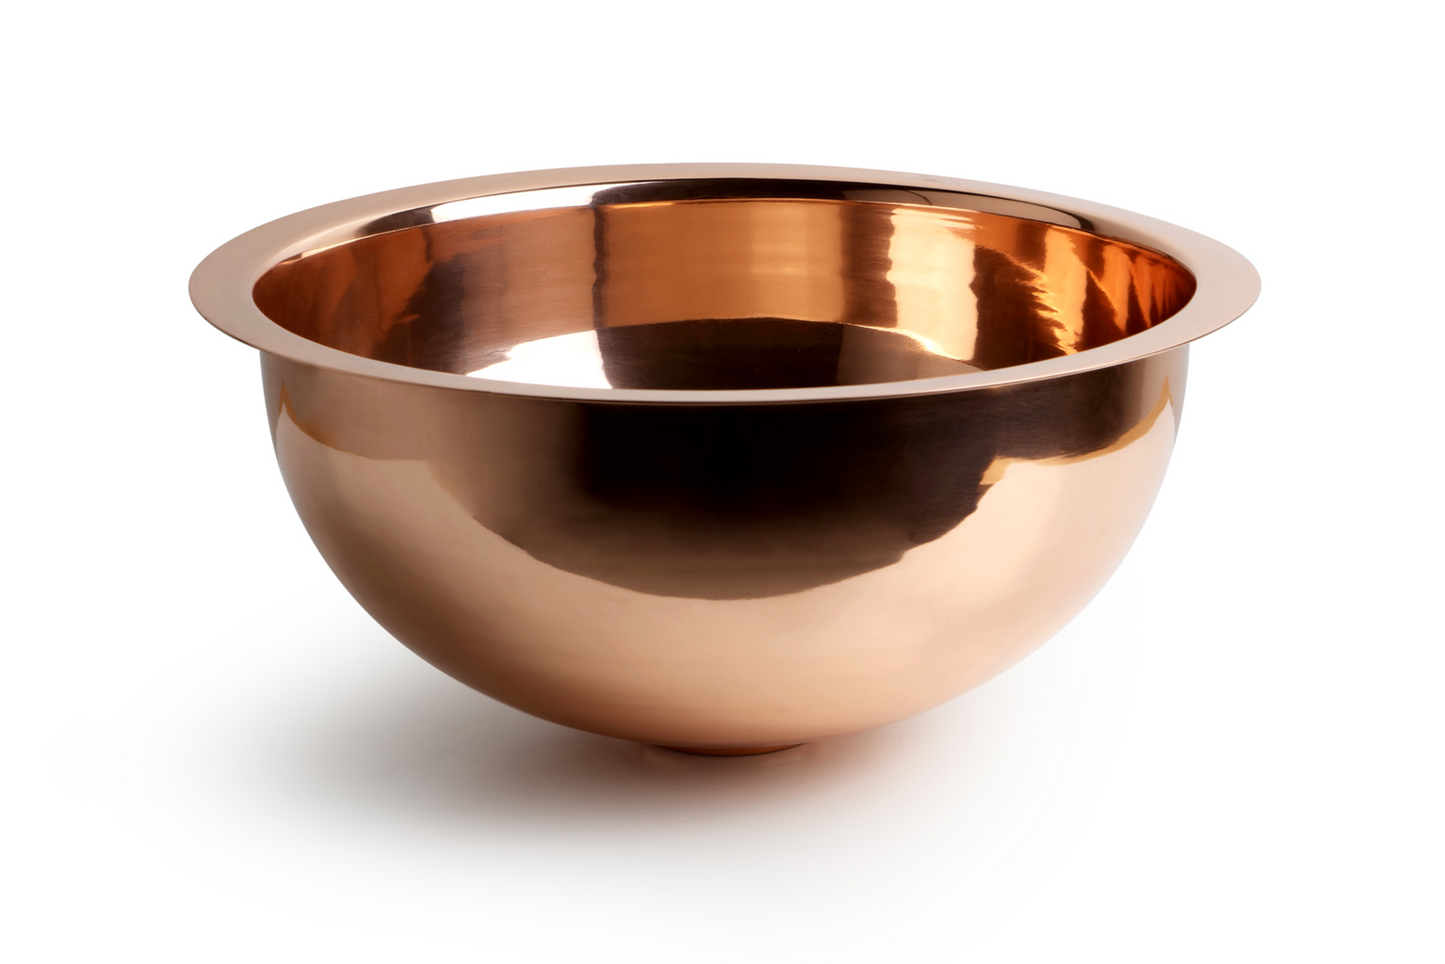 Under round copper washbasin by Balneo Toscia Vintage style